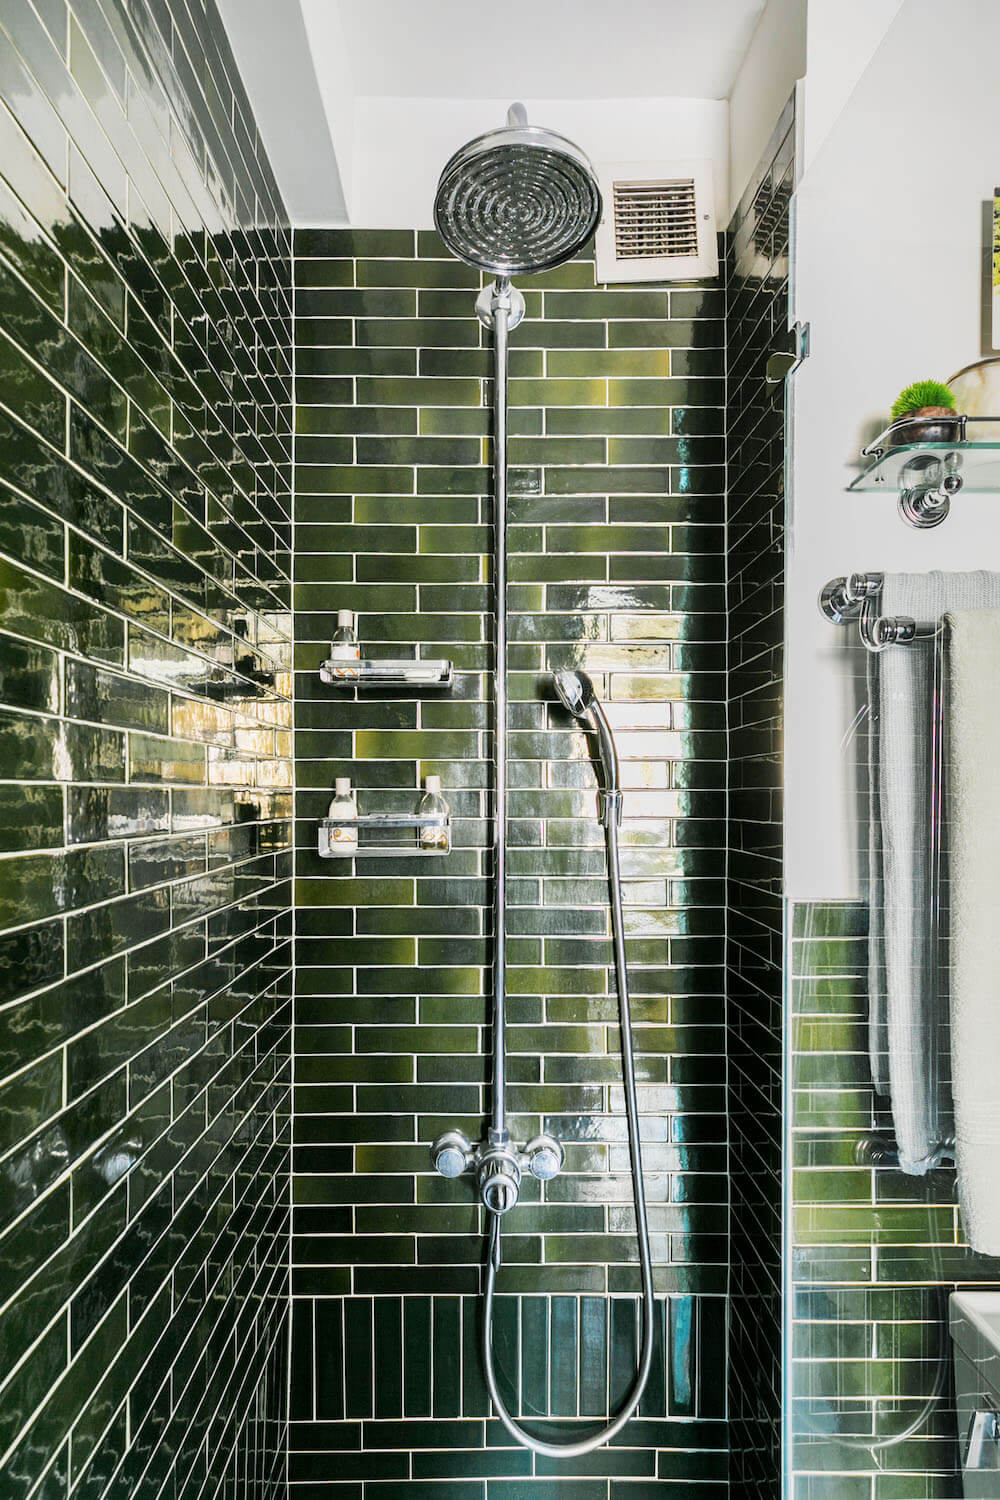 Image of vintage shower head in green tile shower